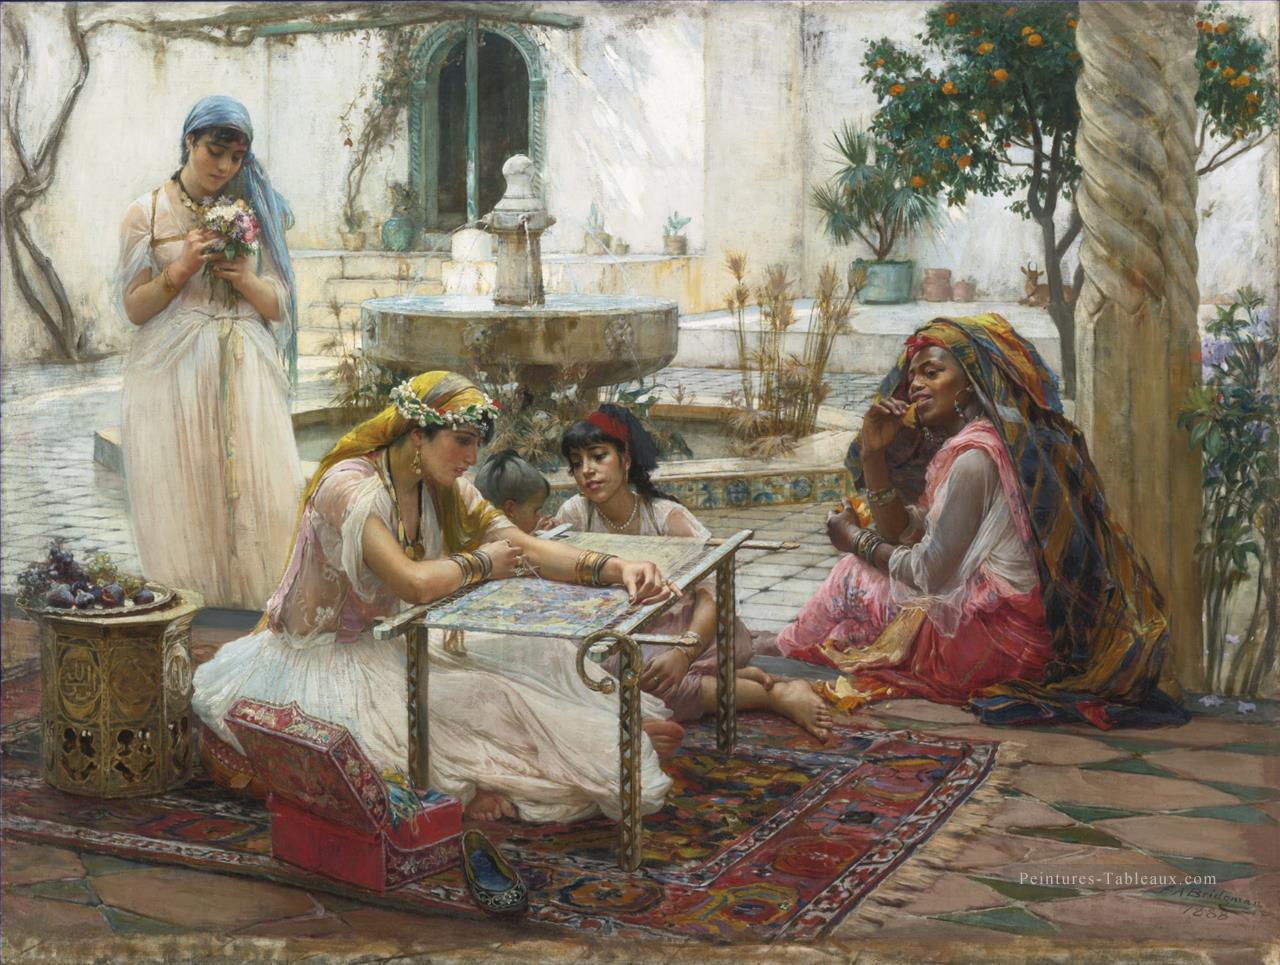 DANS UNE VILLE DE CAMPAGNE ALGER Frederick Arthur Bridgman Arabe Peintures à l'huile